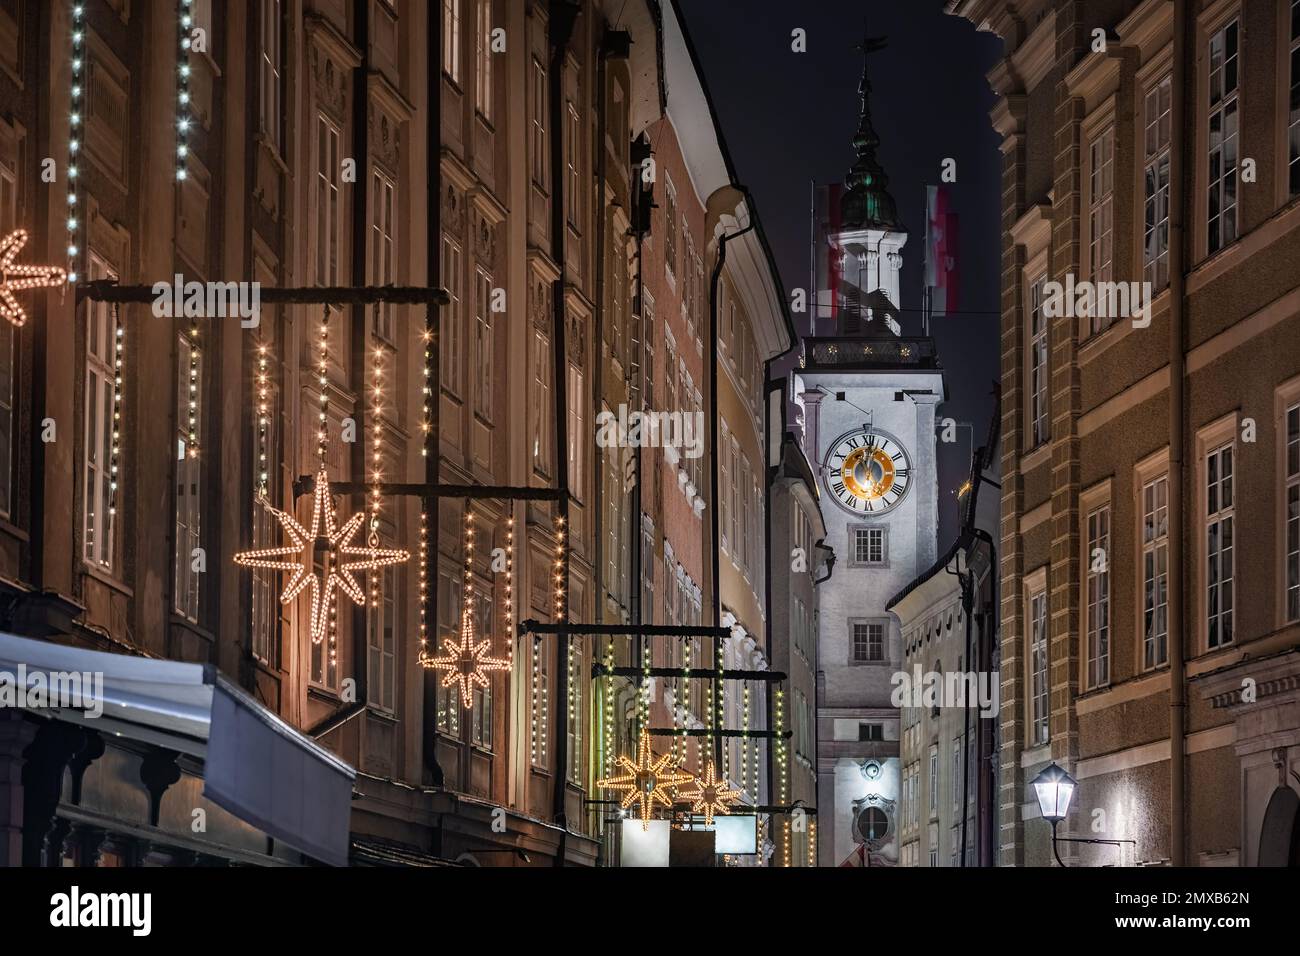 Salzburg, Österreich - beleuchteter Uhrenturm des ehemaligen Alten Rathauses an der weihnachtlich dekorierten Getreidegasse, der berühmten Einkaufsstraße Stockfoto